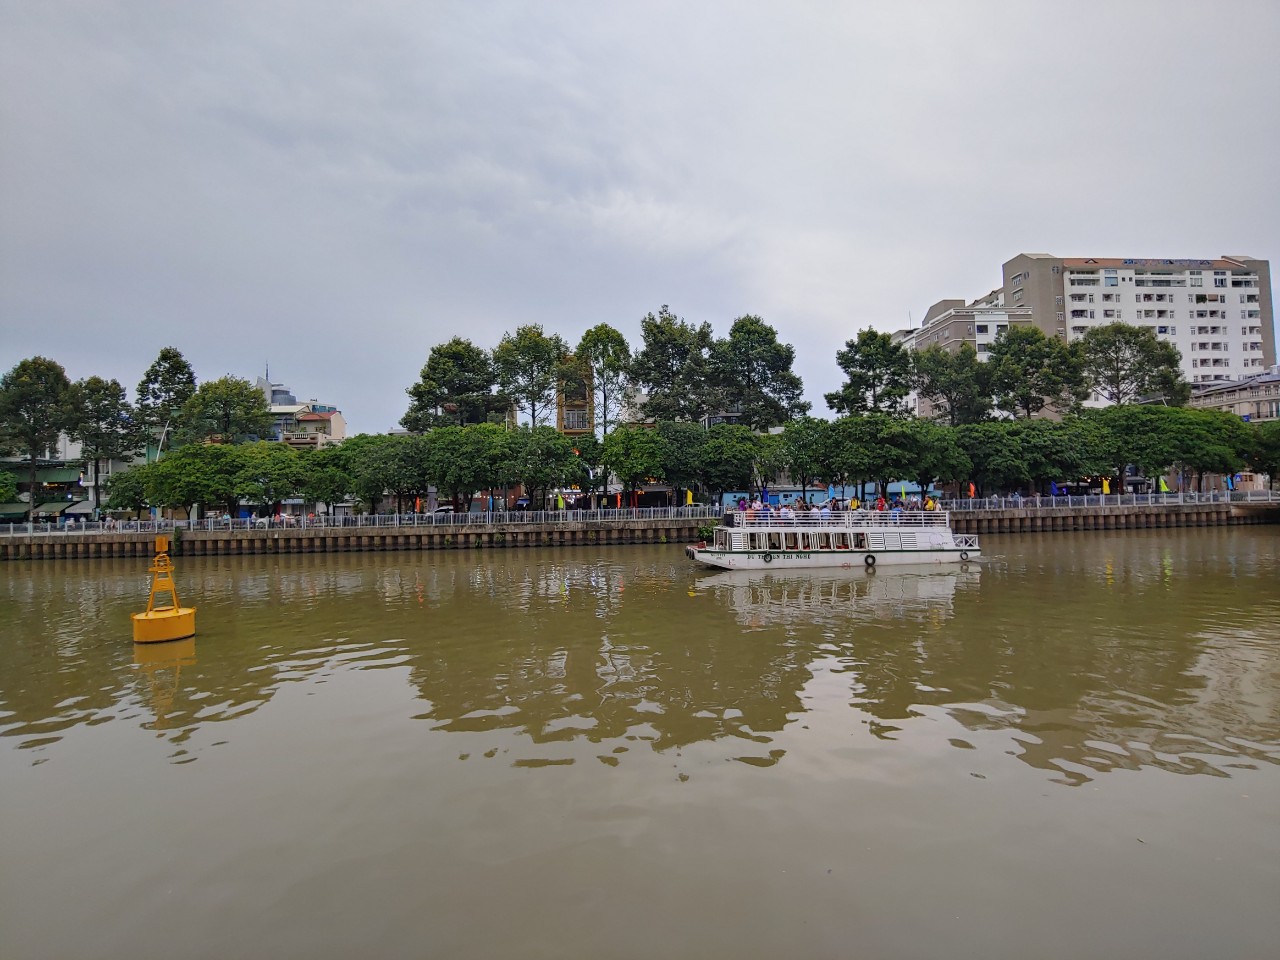 Đặc sản các vùng miền quy tụ tại kênh Nhiêu Lộc - Thị Nghè - 6